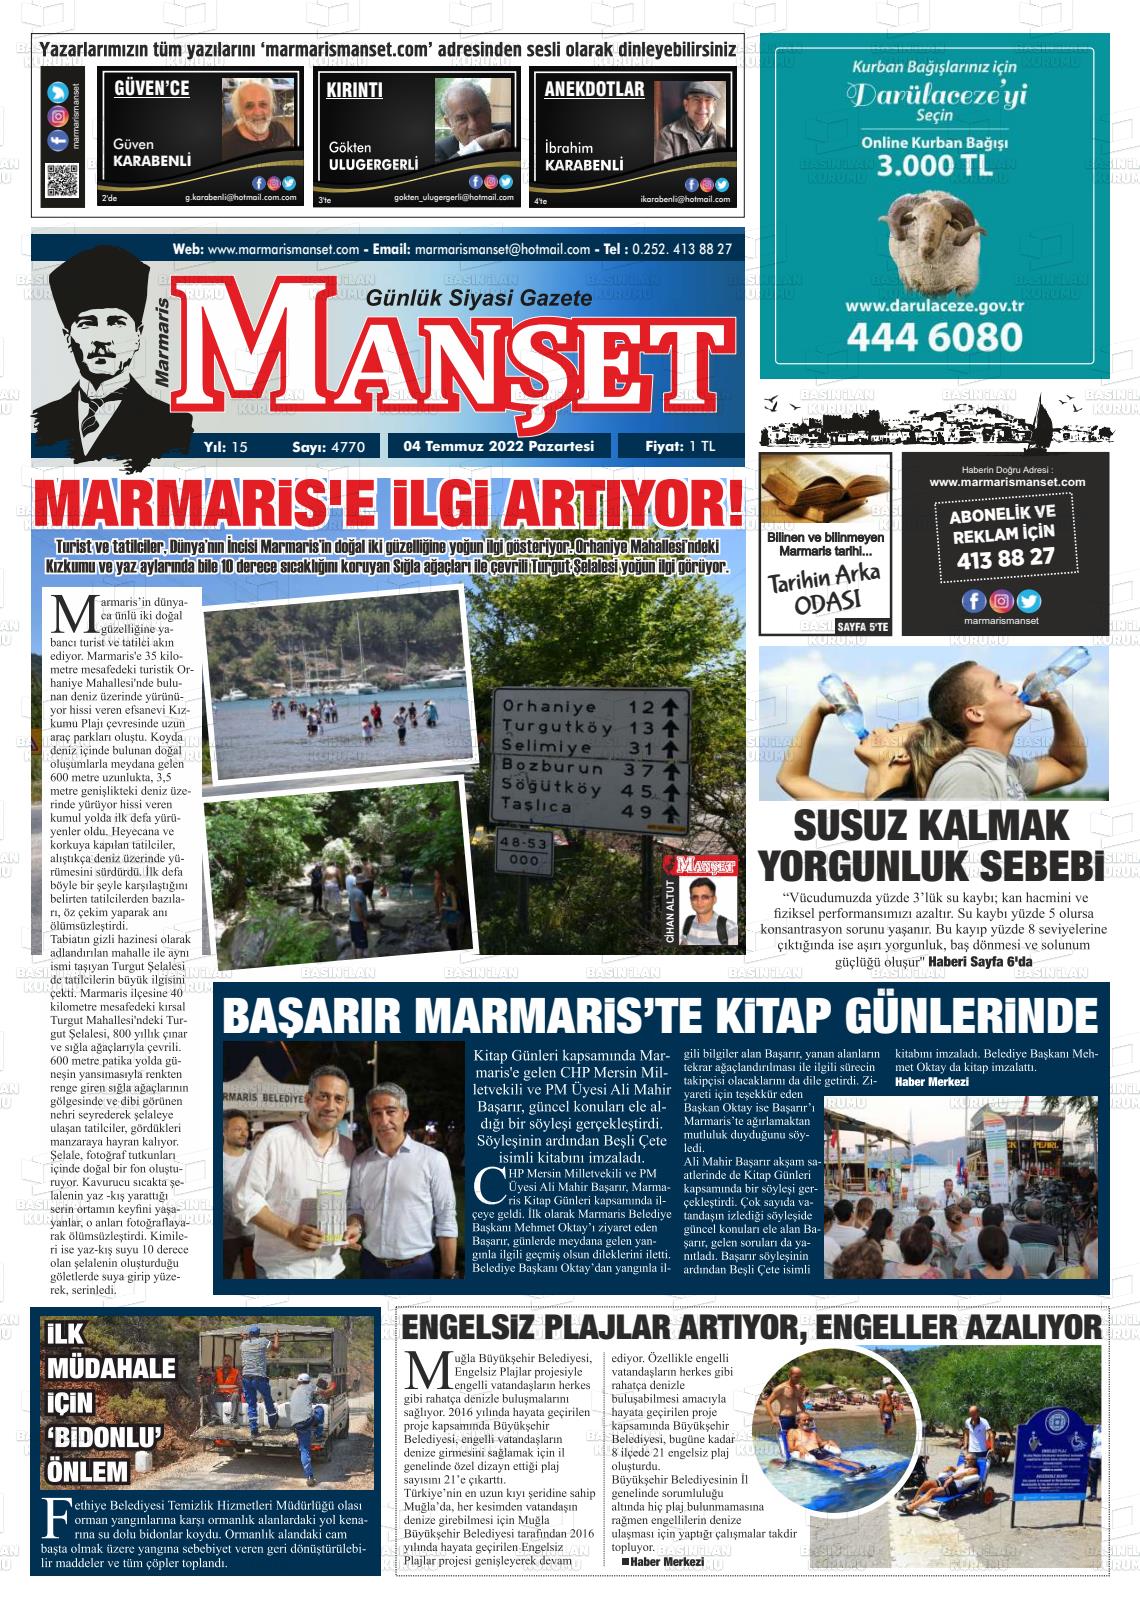 04 Temmuz 2022 Marmaris Manşet Gazete Manşeti